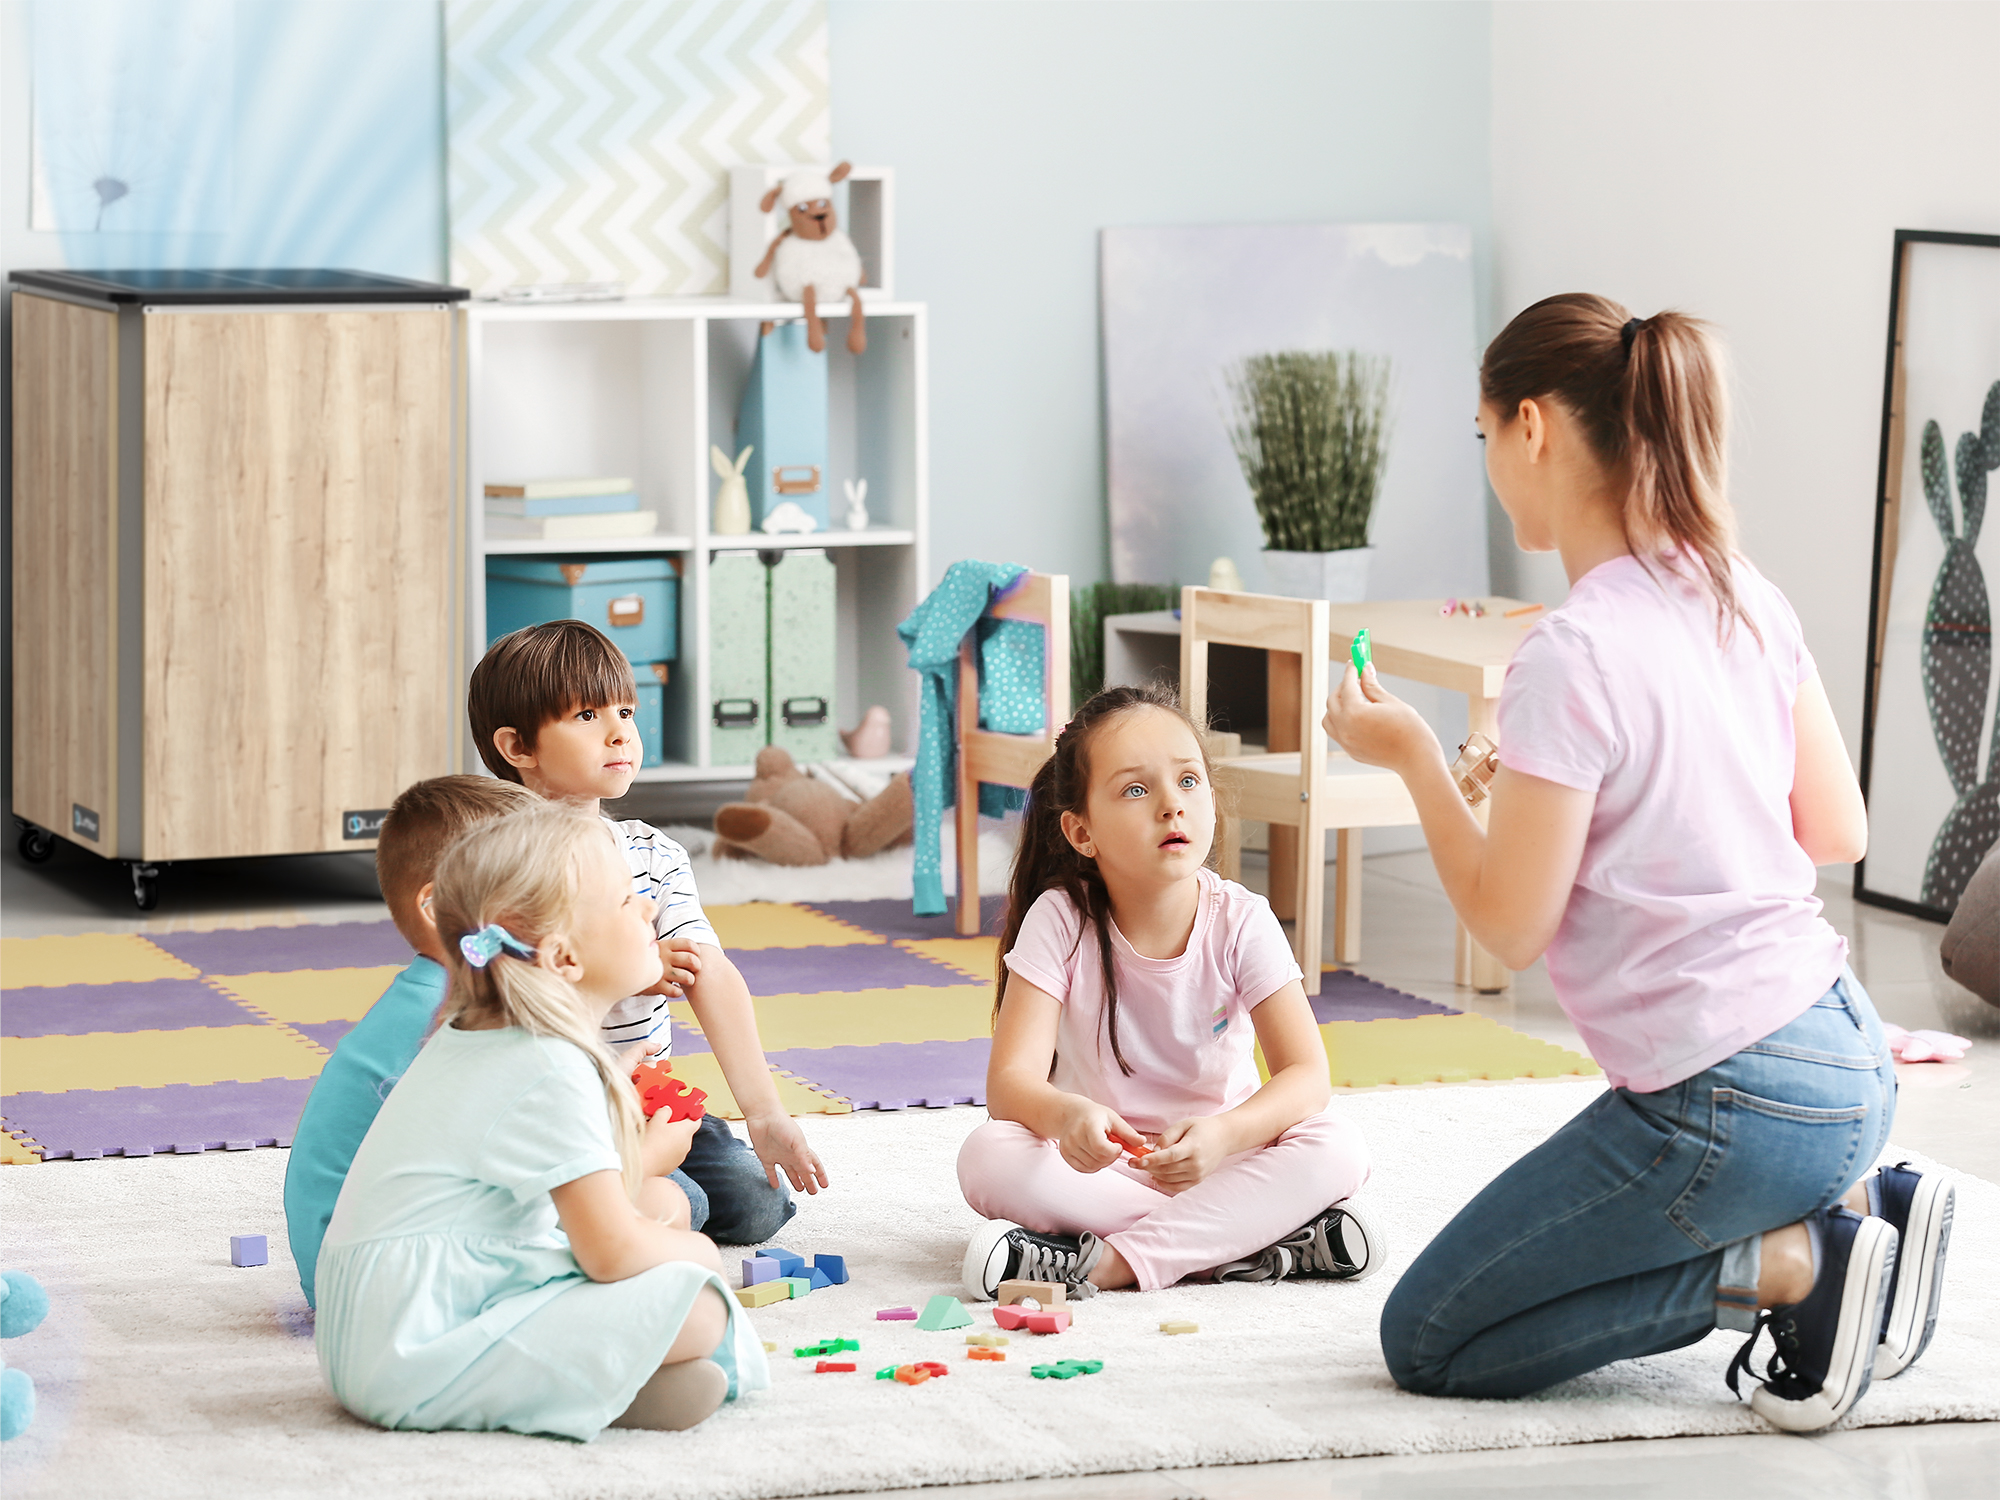 Luftklar  air purifier creates safe indoor air in a kindergarten 